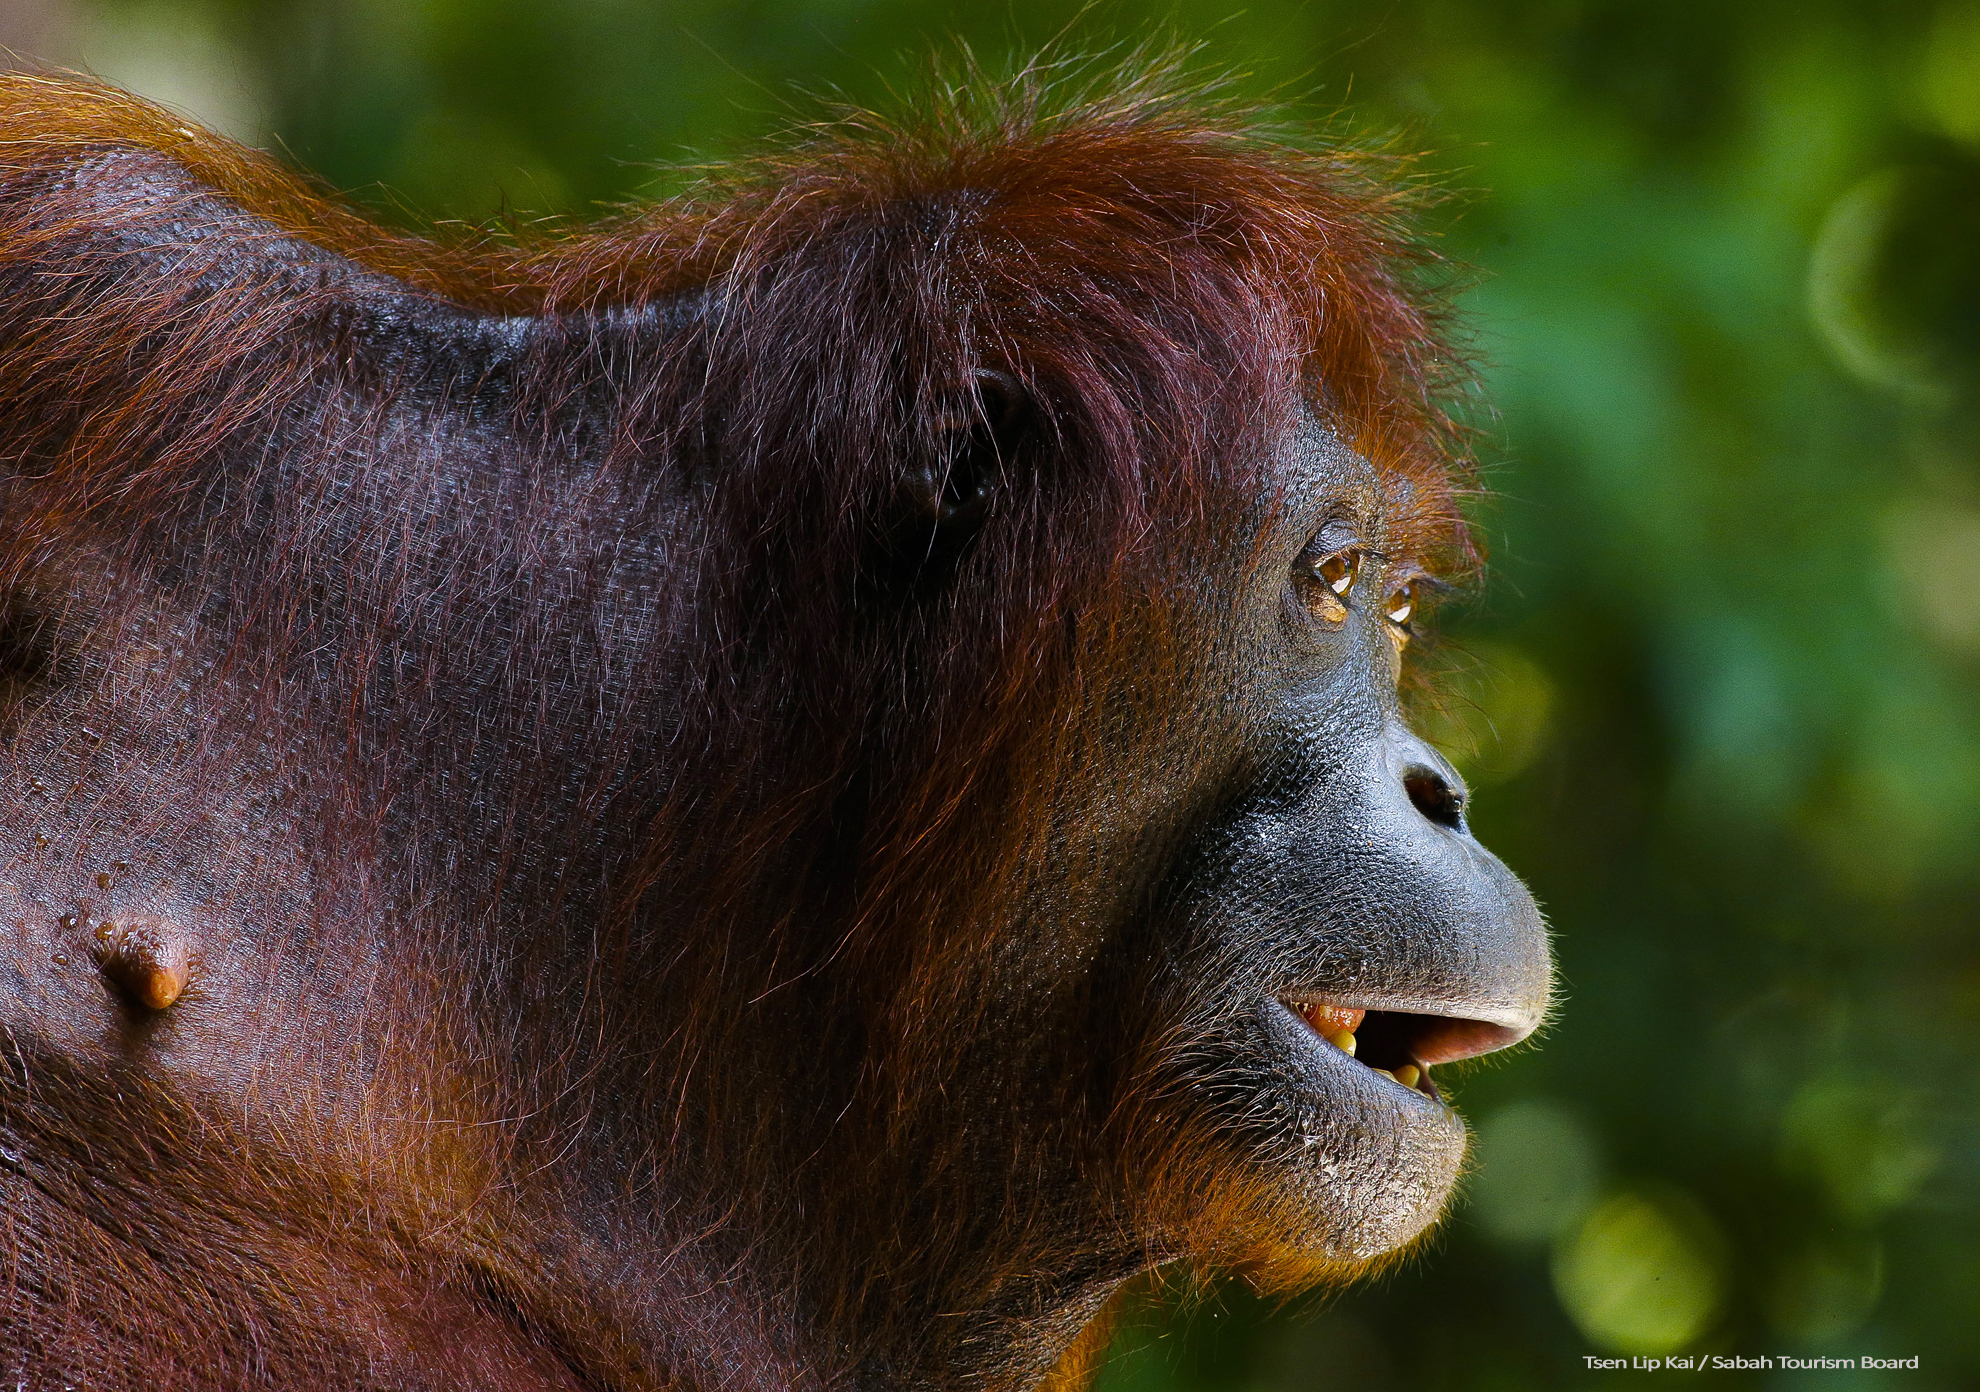 Orangutan Sabah_Tourism-Tsen Lip Kai-PIC_276